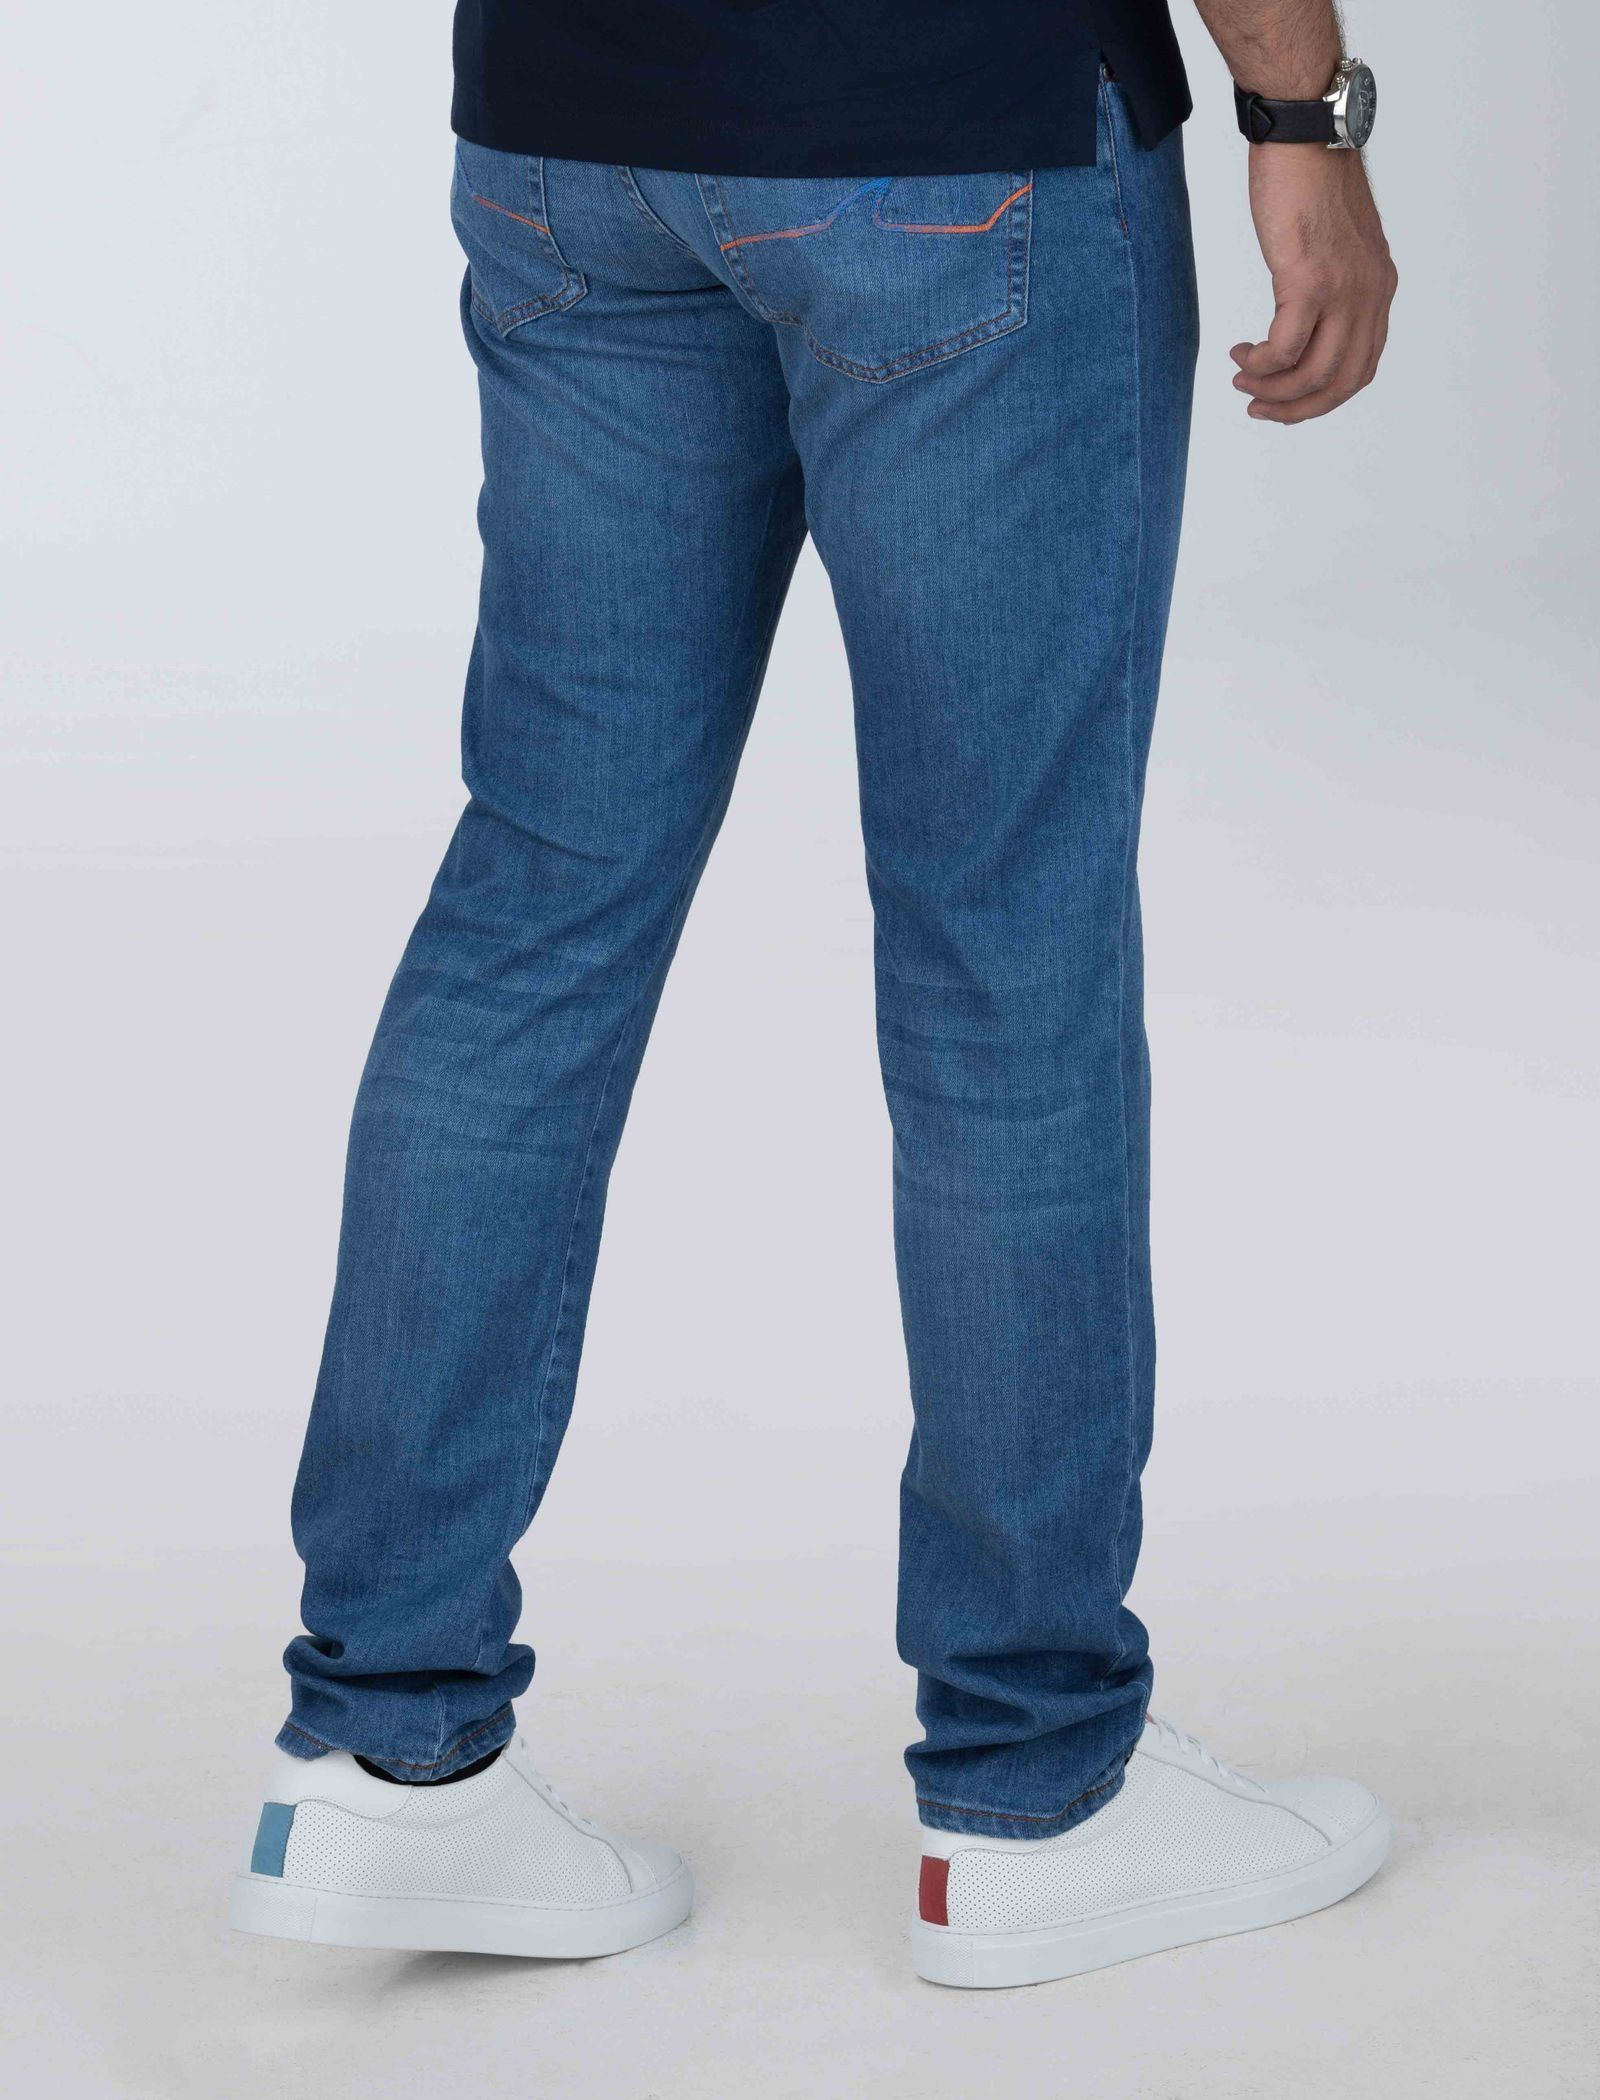 شلوار جین راسته مردانه - پاول اند شارک - آبي - 8